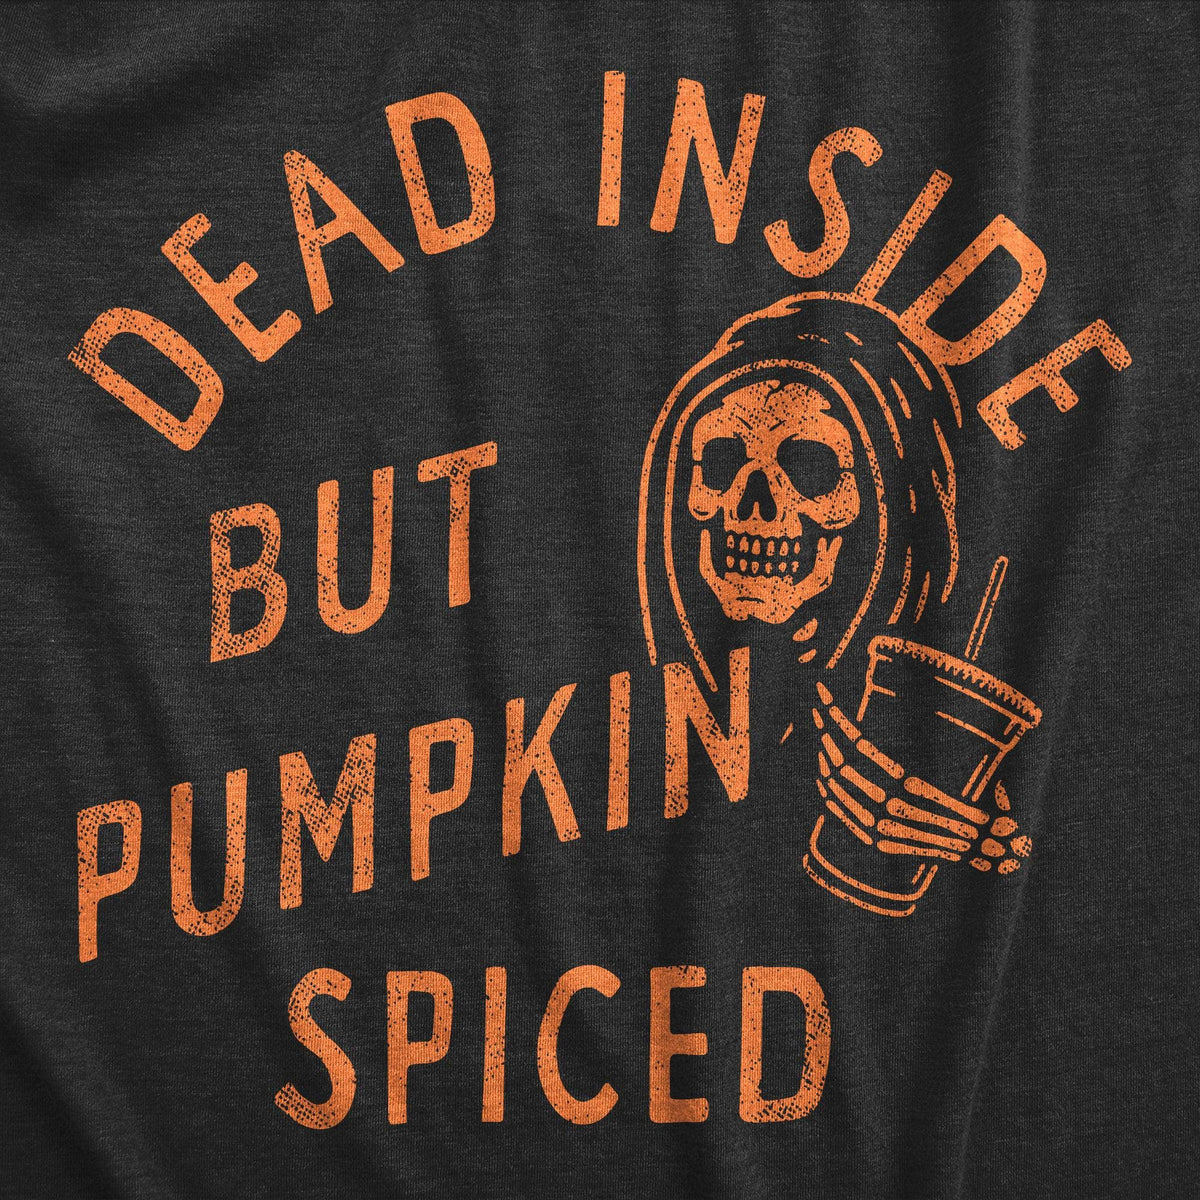 Dead Inside But Pumpkin Spiced Men&#39;s Tshirt  -  Crazy Dog T-Shirts